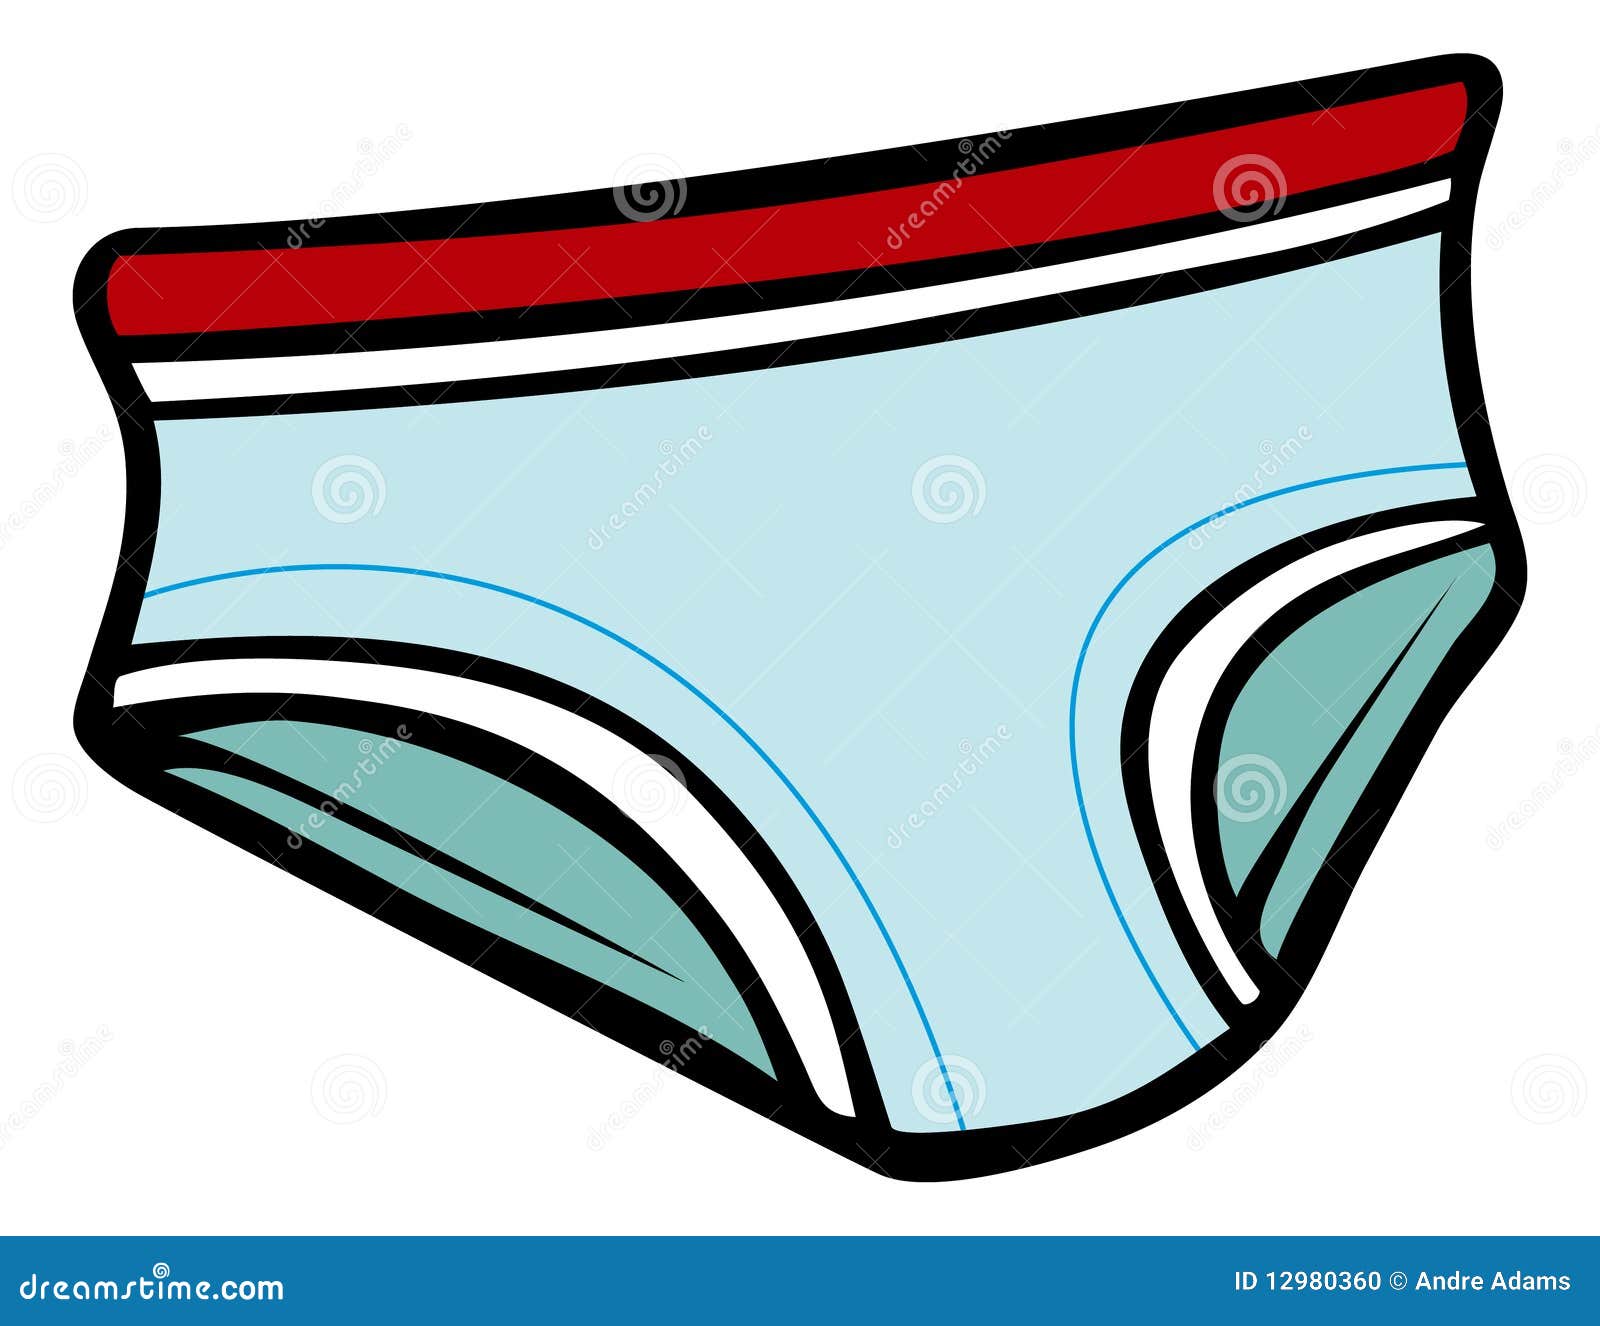 free clipart underwear - photo #23